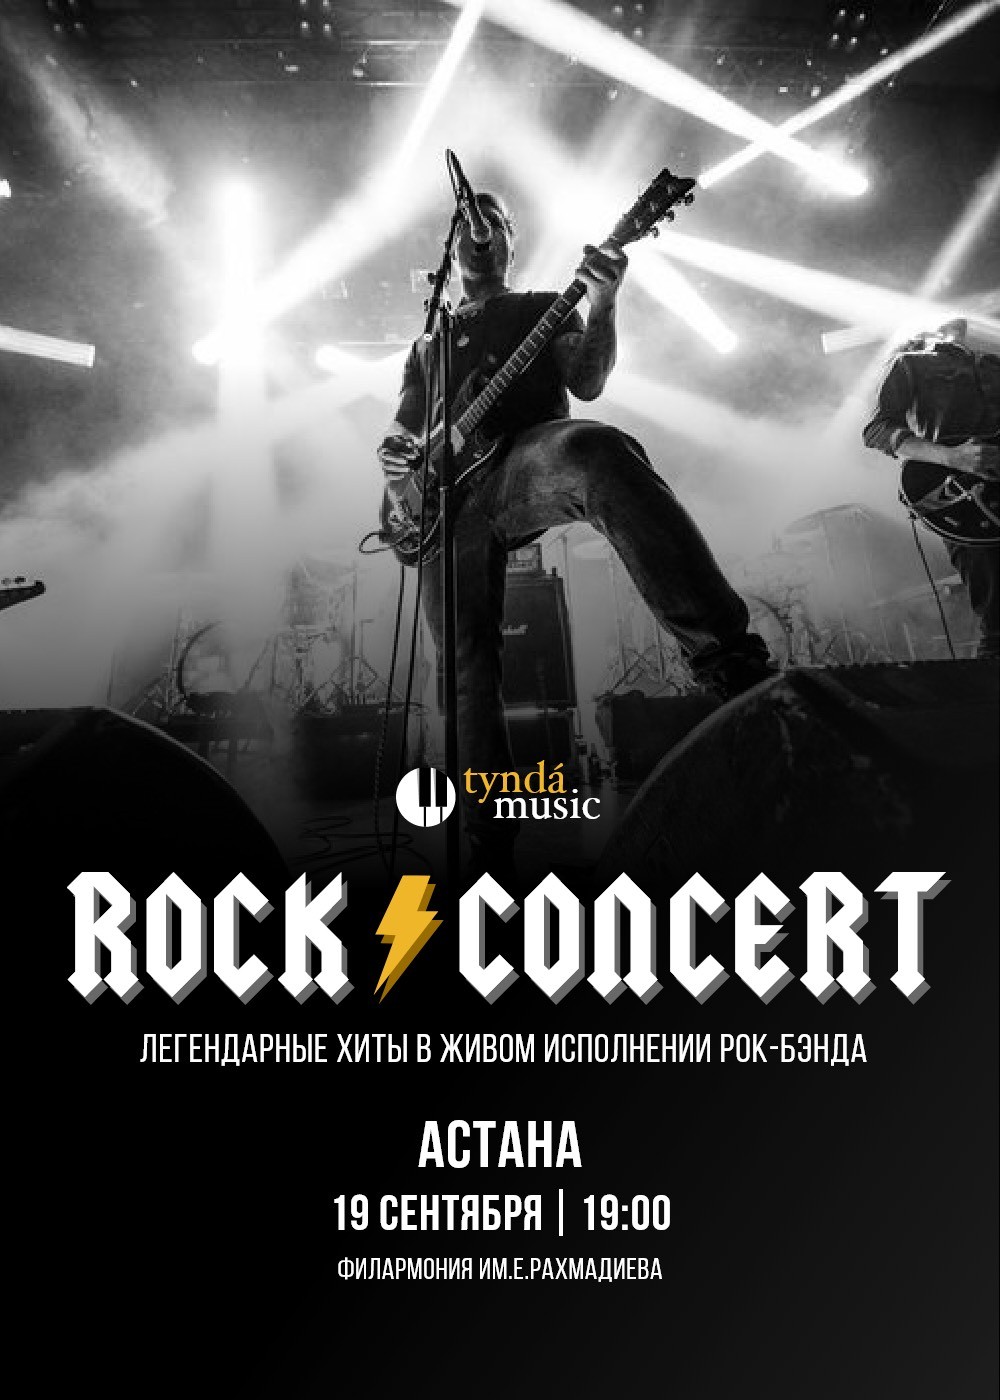 Rock concert в Астане